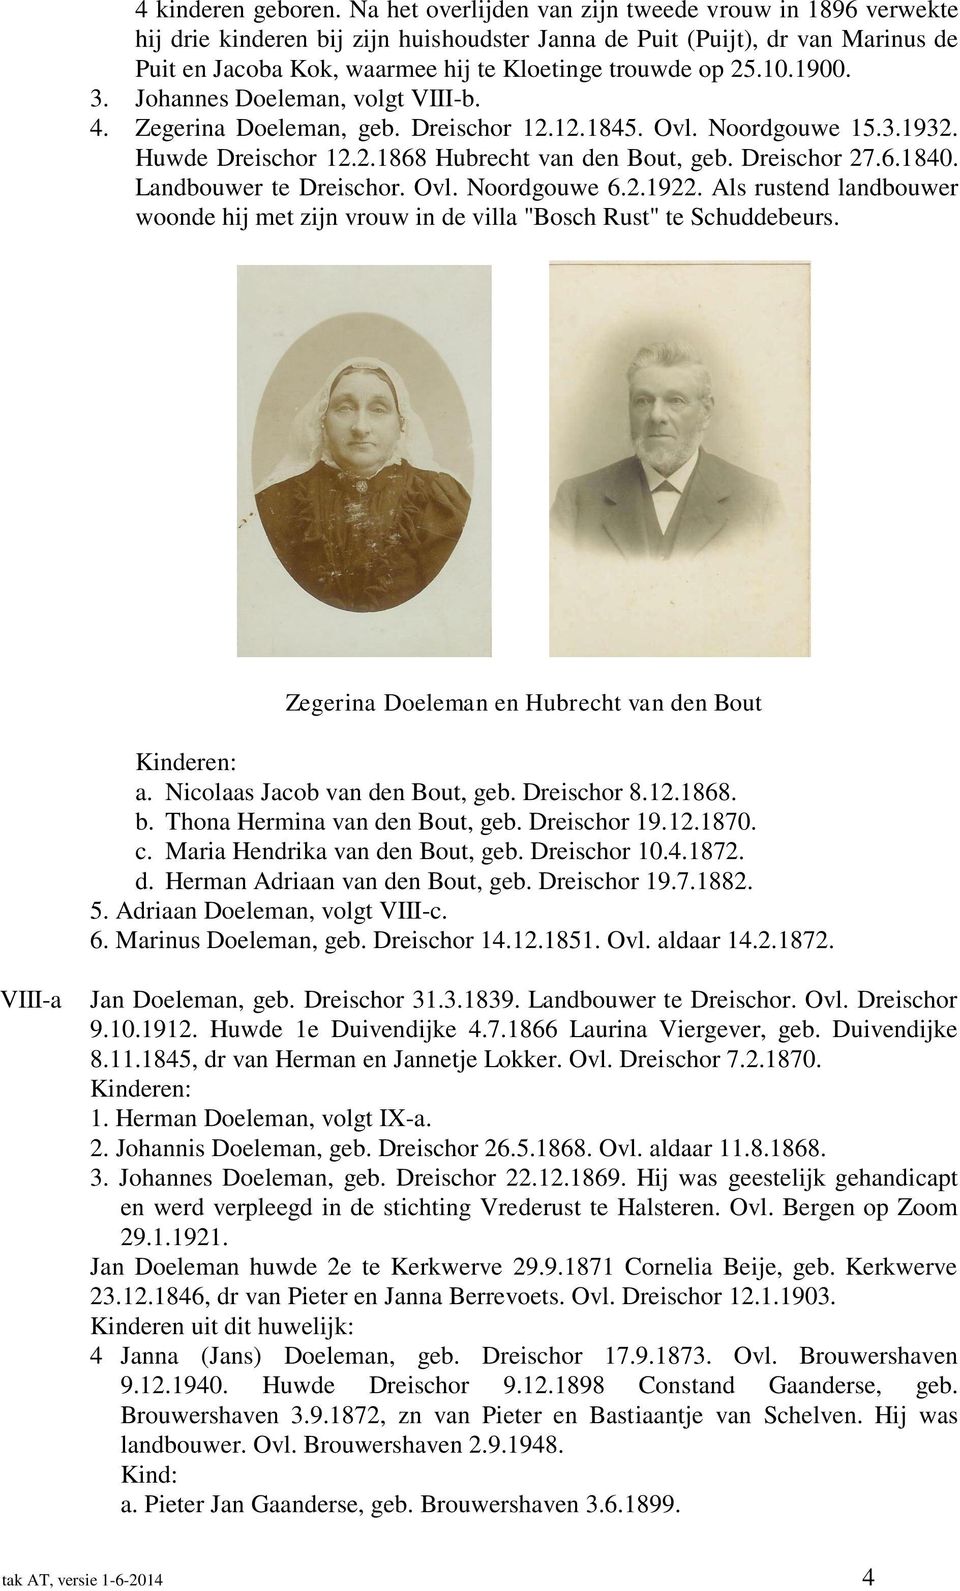 1900. 3. Johannes Doeleman, volgt VIII-b. 4. Zegerina Doeleman, geb. Dreischor 12.12.1845. Ovl. Noordgouwe 15.3.1932. Huwde Dreischor 12.2.1868 Hubrecht van den Bout, geb. Dreischor 27.6.1840.